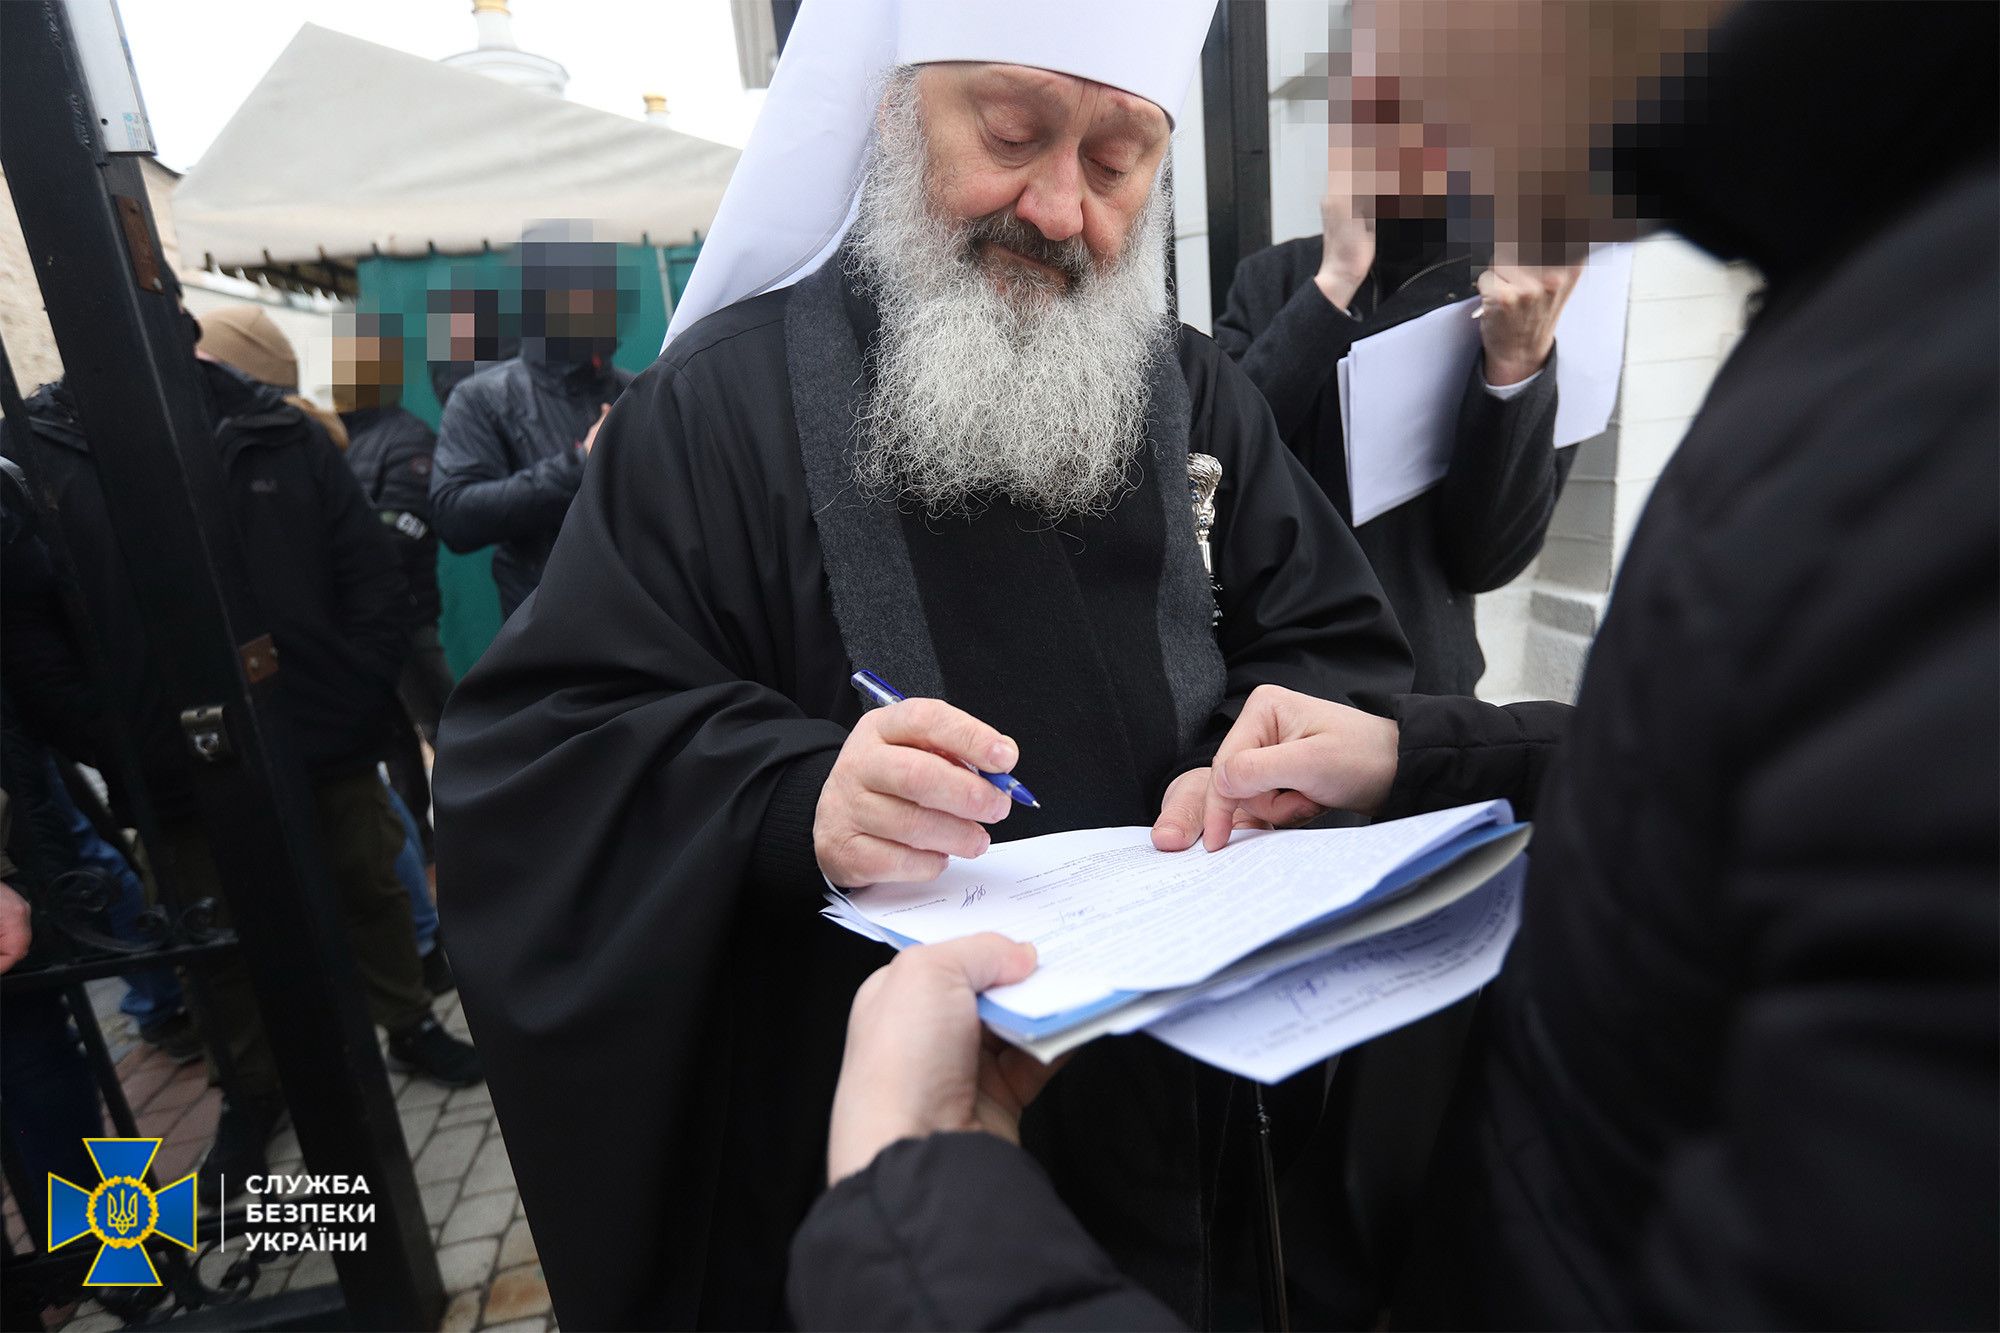 СБУ сообщает о подозрении митрополиту Павлу 1 апреля